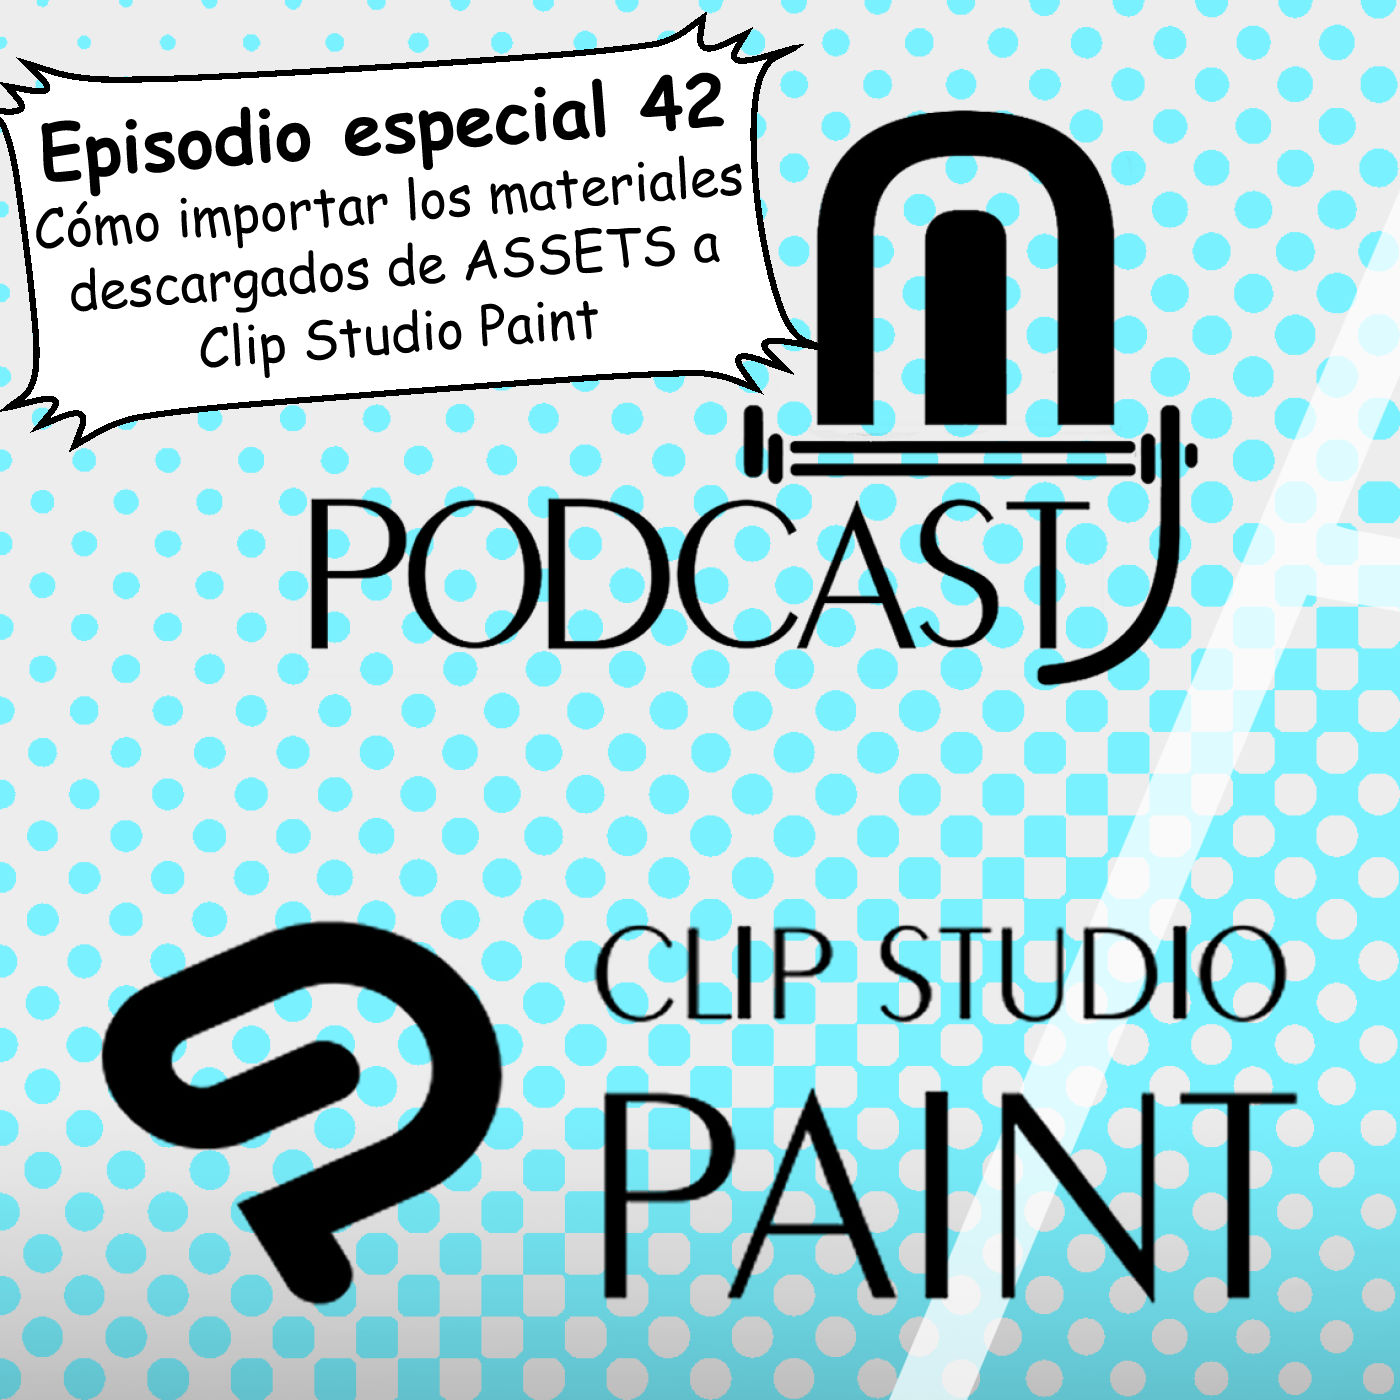 CSP especial 42. Guía completa: Cómo importar los materiales descargados de ASSETS a Clip Studio Paint